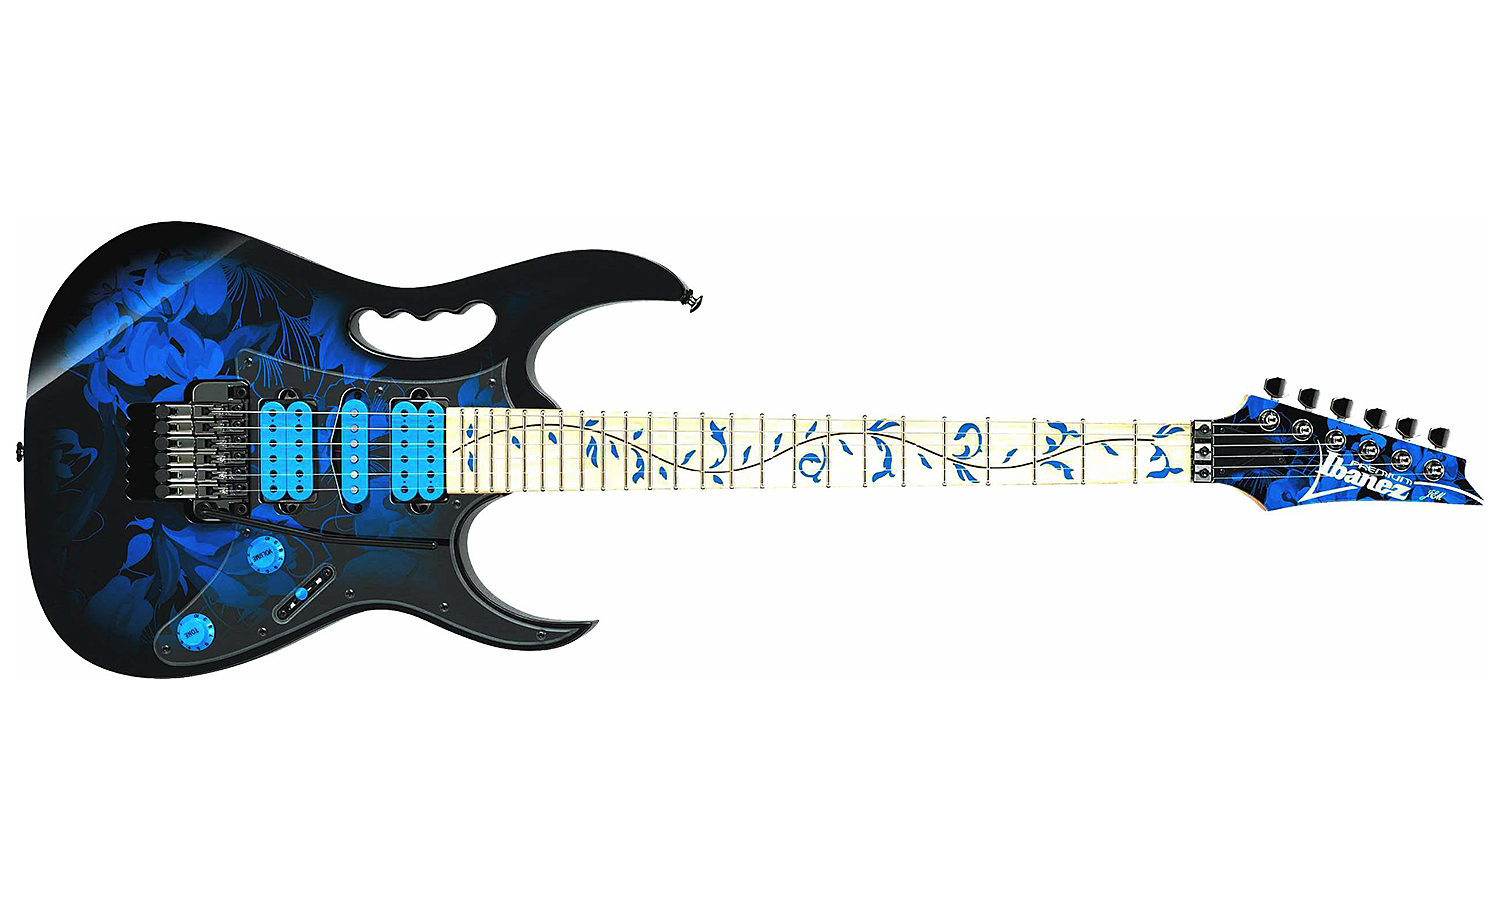 Ibanez Steve Vai Jem77p Bfp Premium Hsh Fr Mn - Blue Floral Pattern - Str shape electric guitar - Variation 1